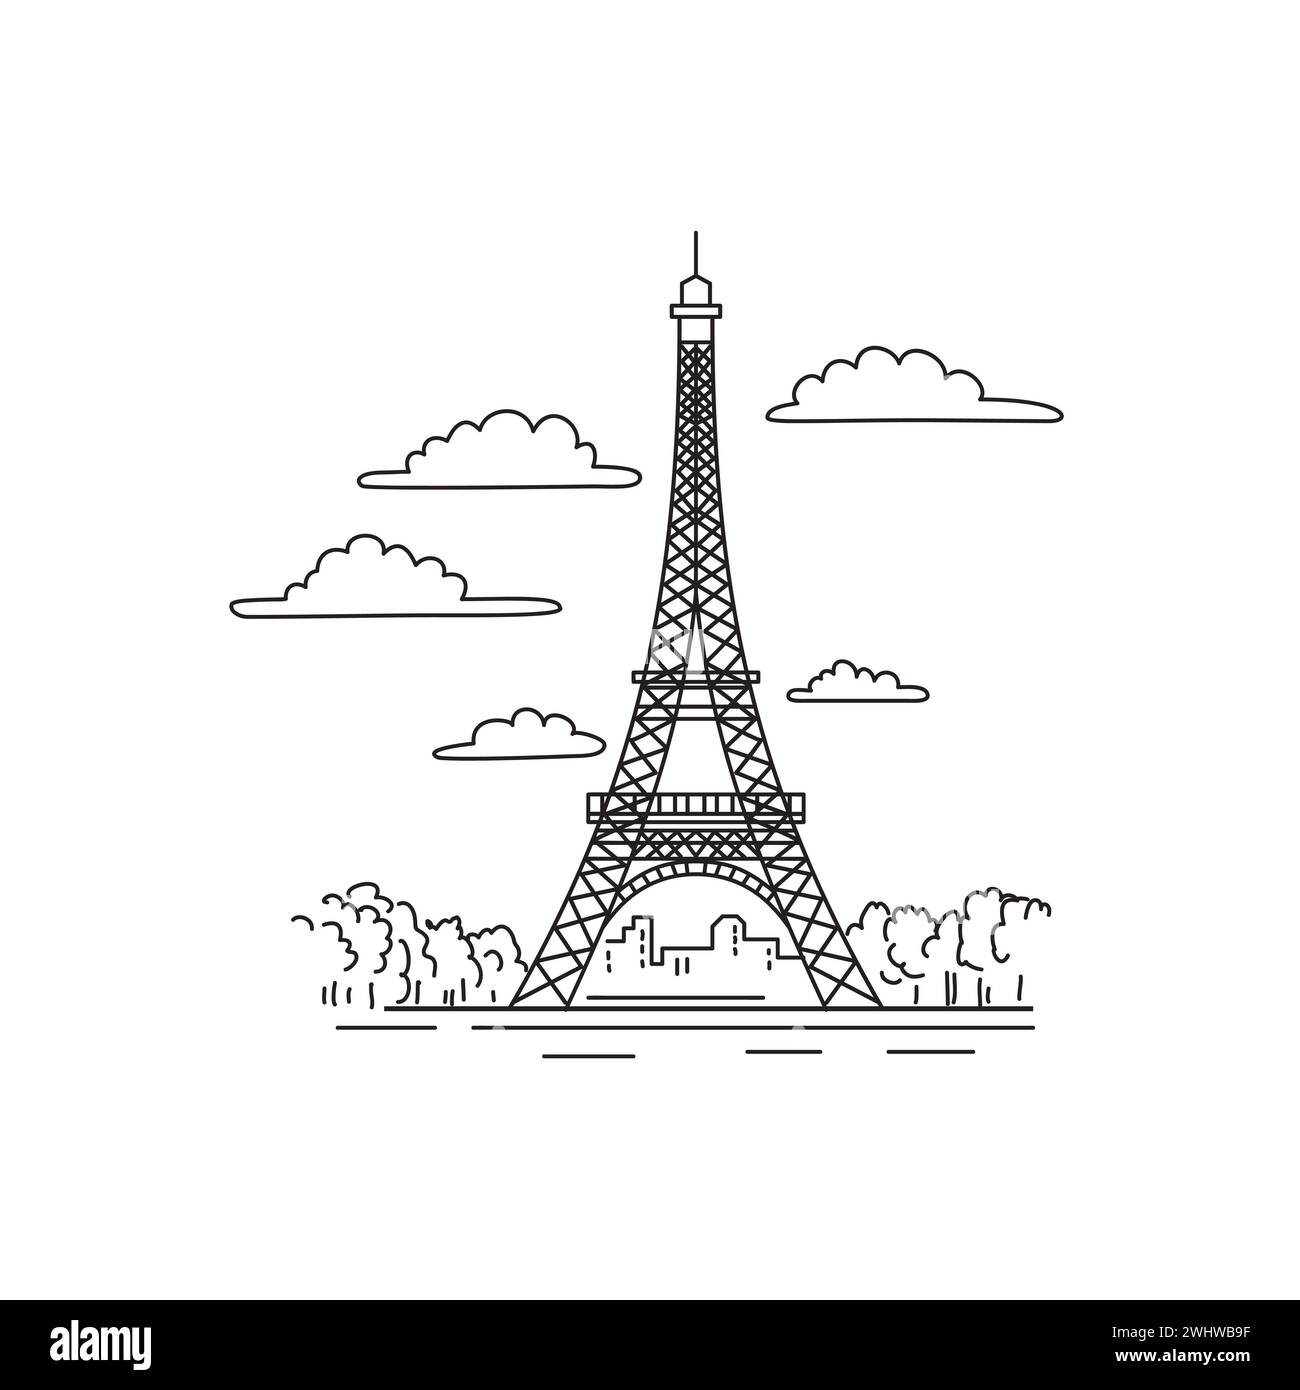 Eiffel Tower or Tour Eiffel on Champ de Mars Paris France Mono Line Art Stock Photo